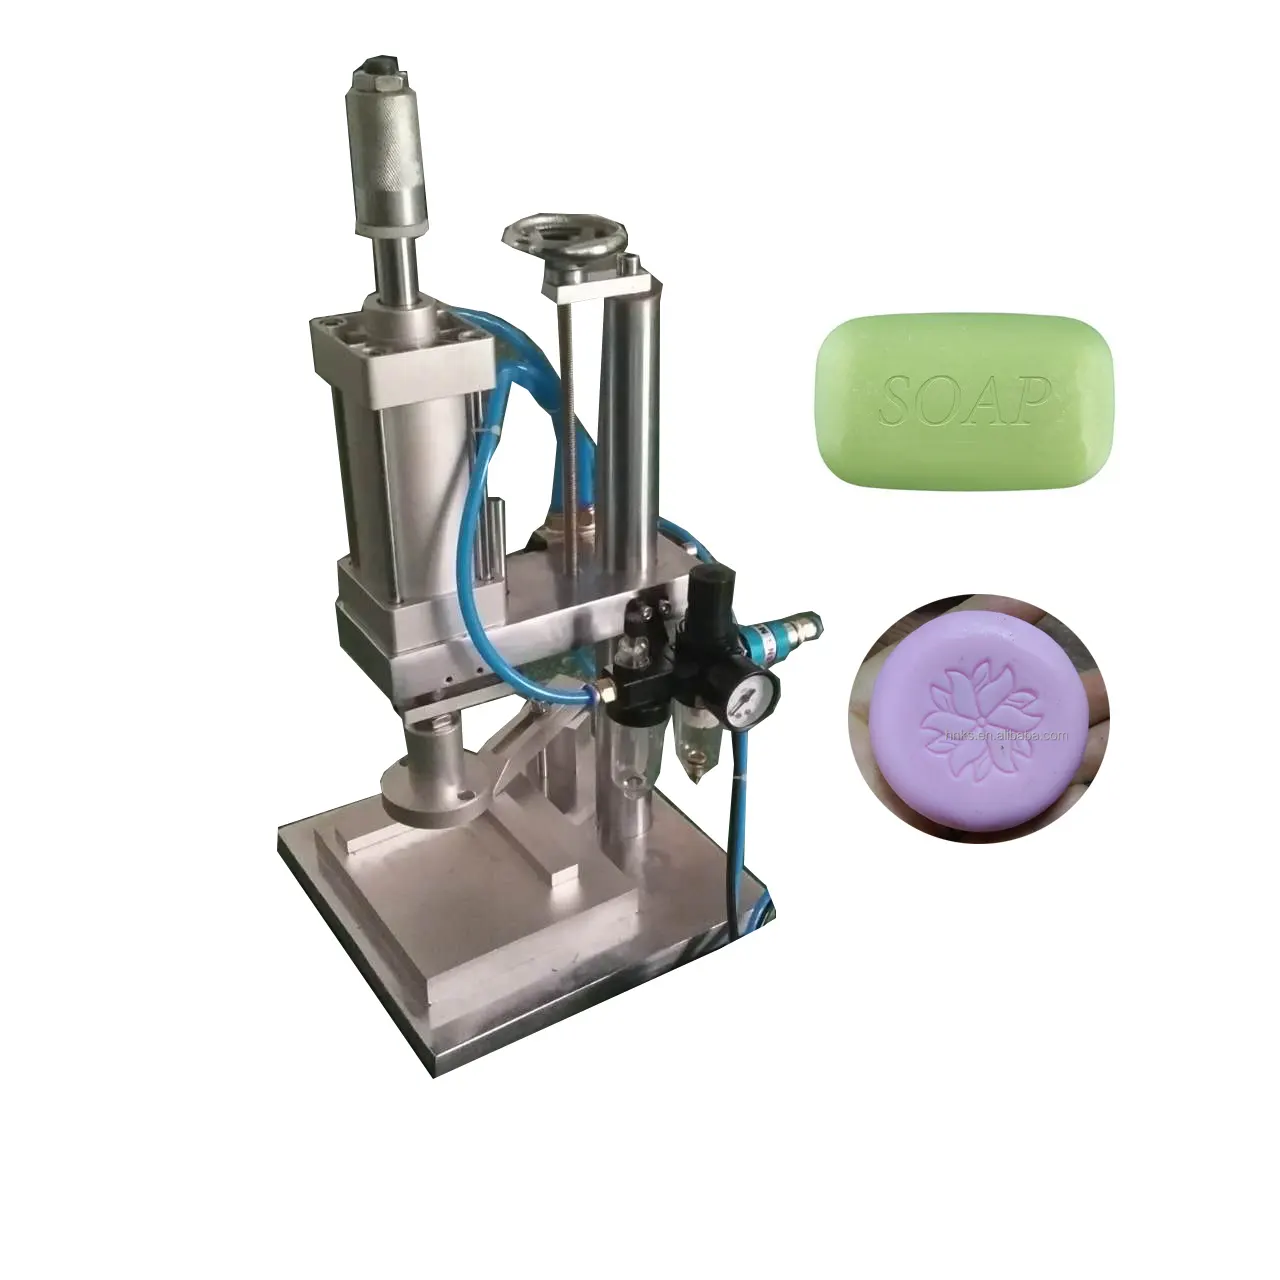 Kaliteli pnömatik sabun basın şekillendirme makinesi için banyo sabunu manuel sabun Stamper aracı makinesi yazıcı ile ucuz fiyat